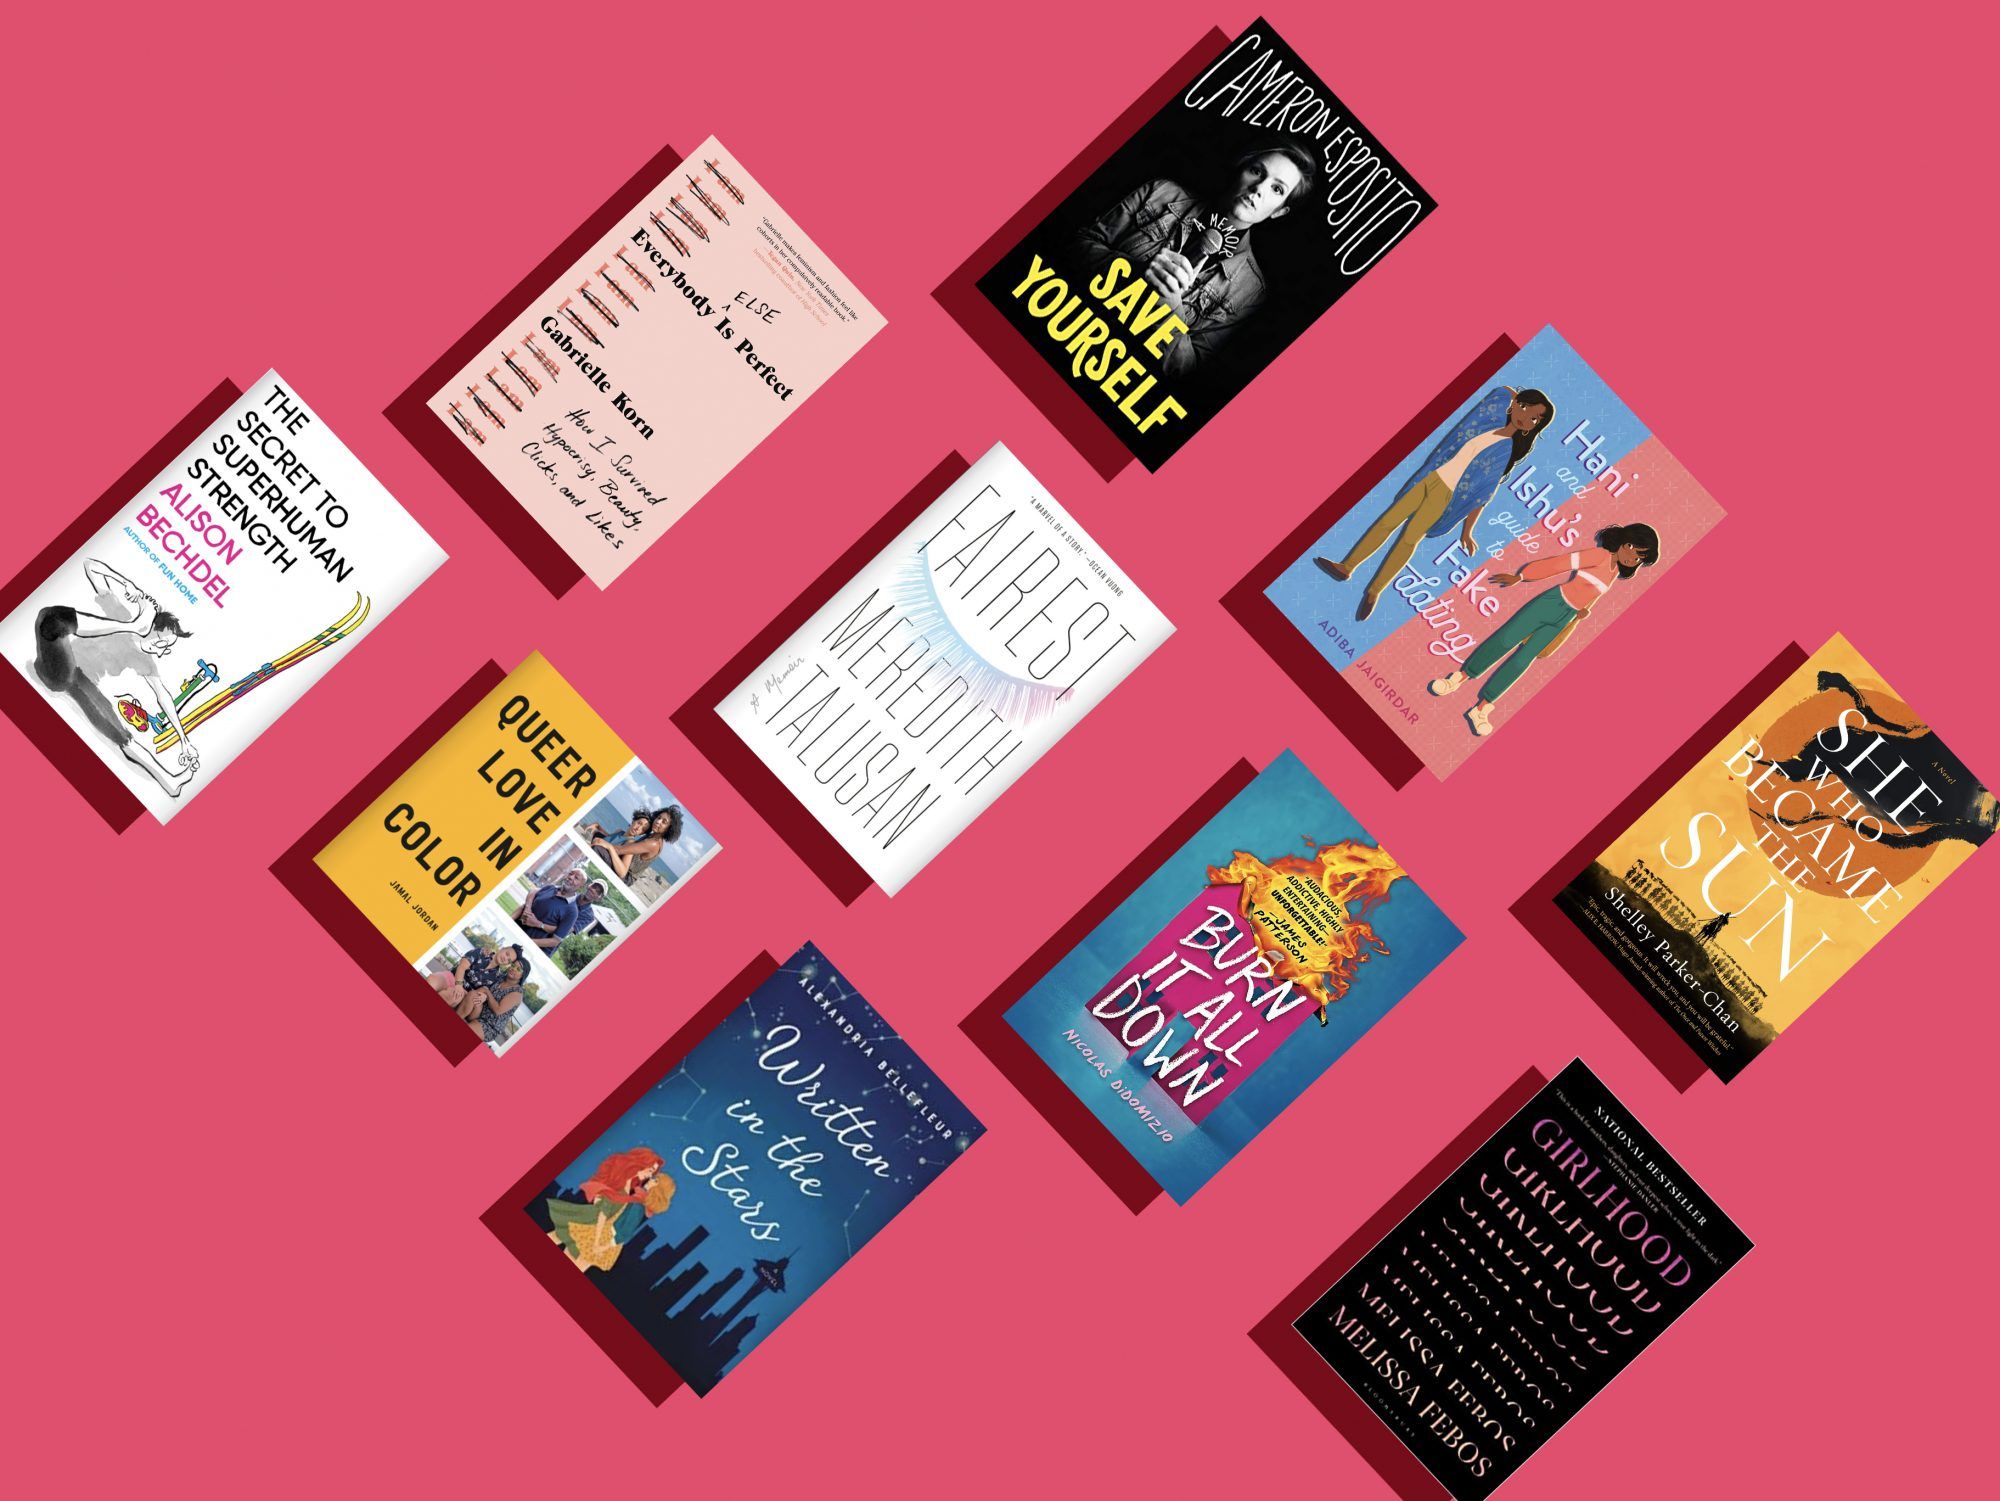 13 նոր LGBTQIA+ գրքեր, որոնք կատարյալ են հպարտության ամսվա ընթերցանության համար (և դրանից դուրս)